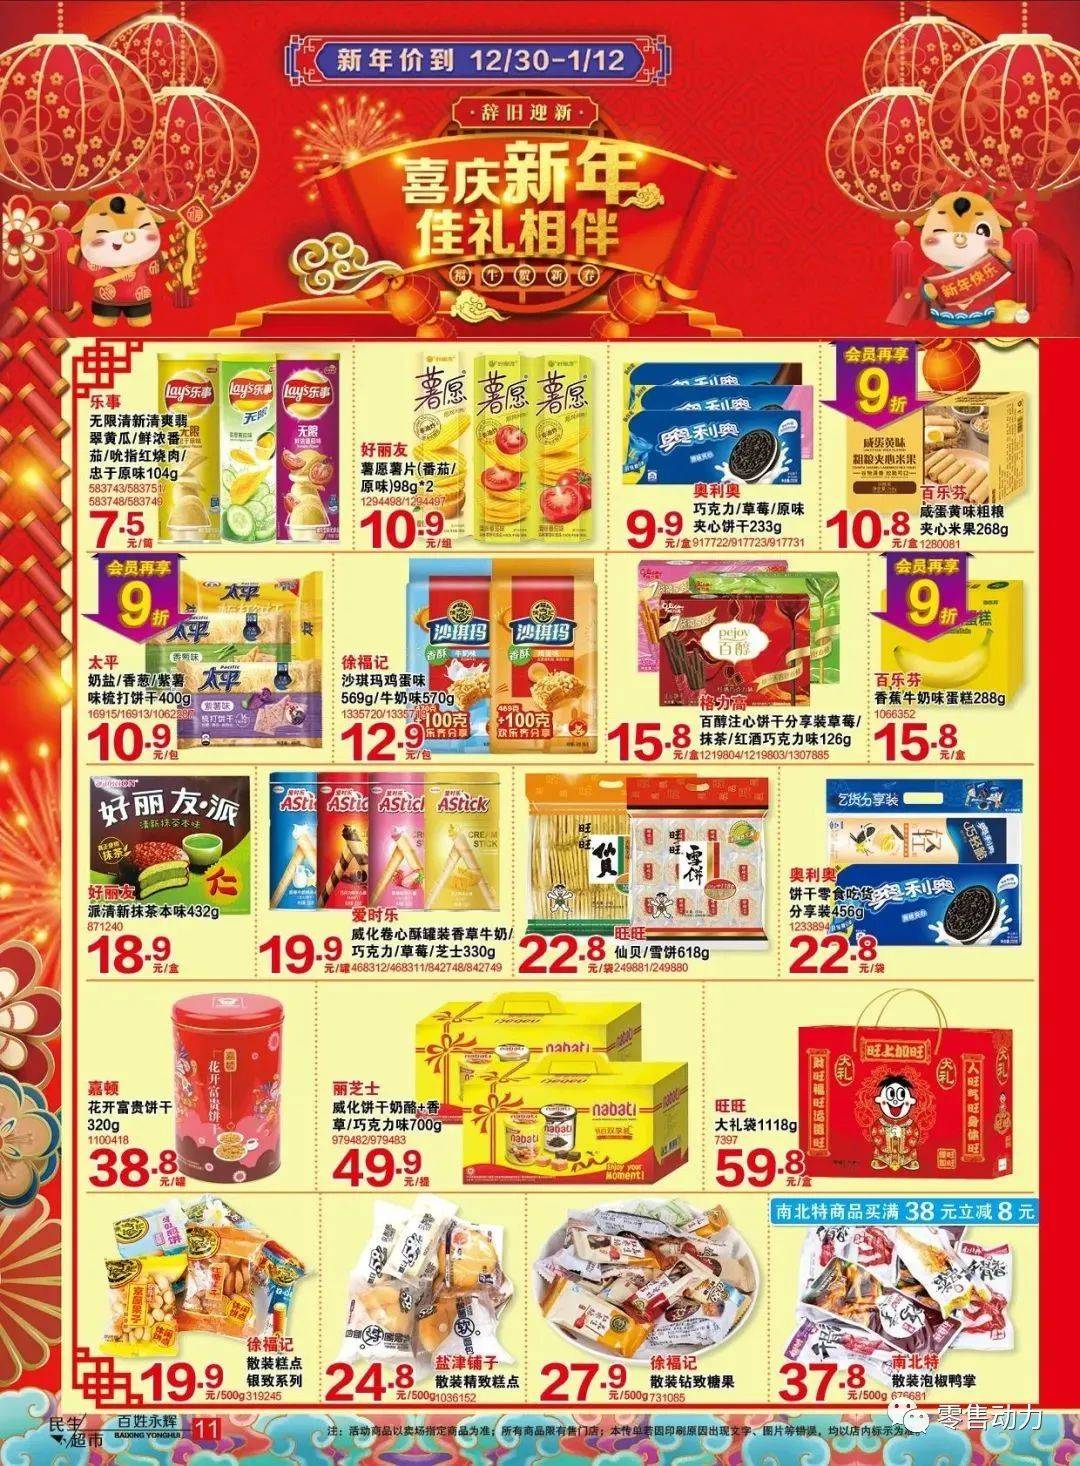 春节标杆超市团购手册和营销海报案例